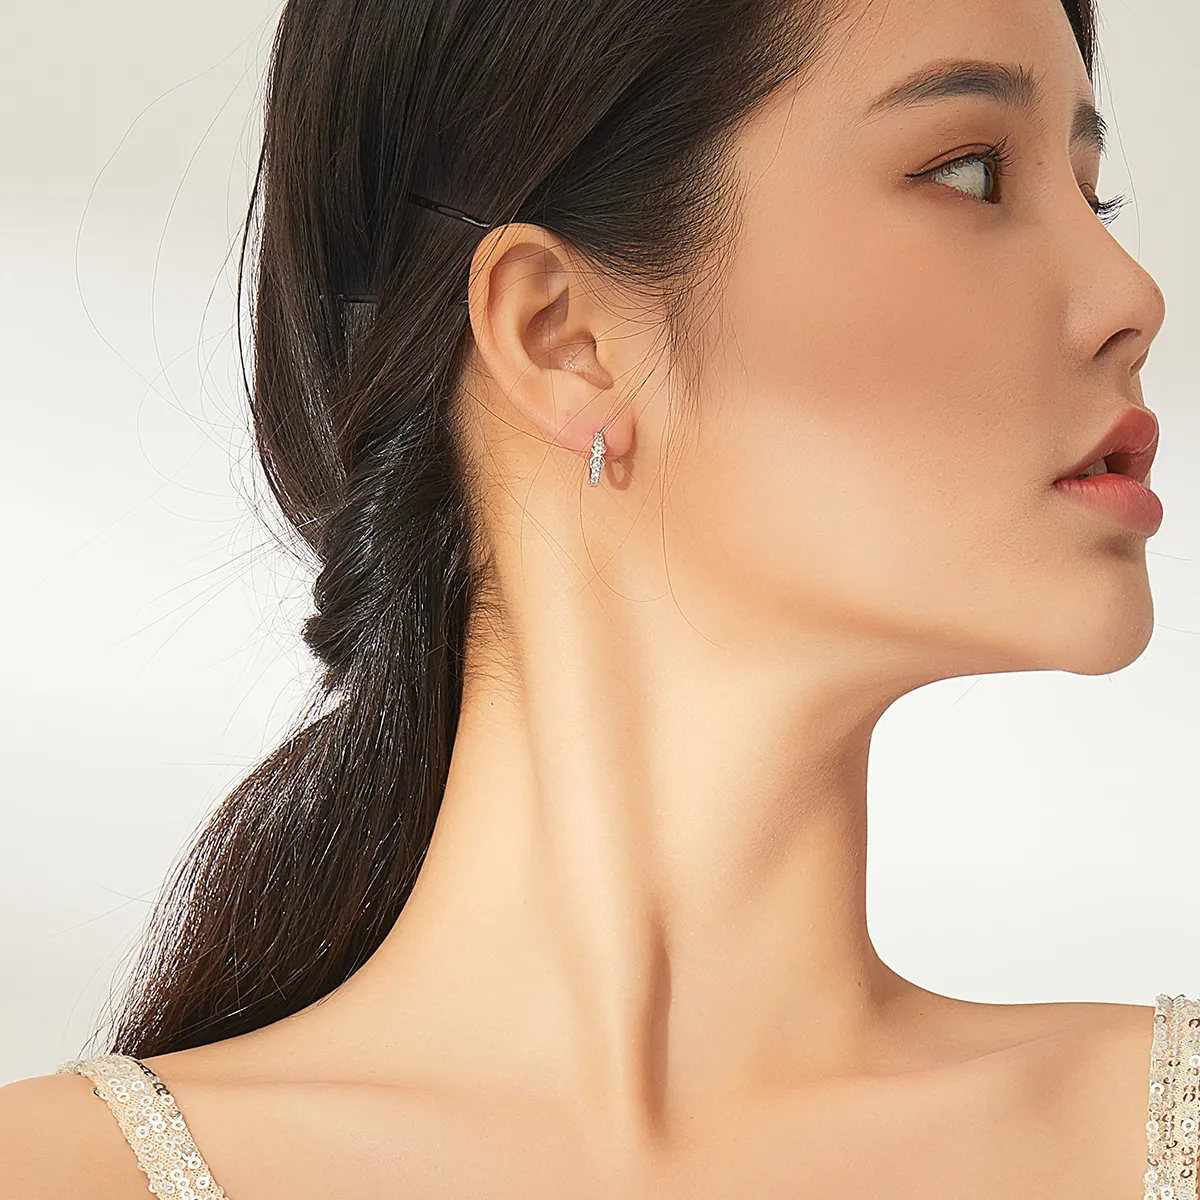 Pandora Style Silver Infinity Symbol Hoop Earrings - SCE872